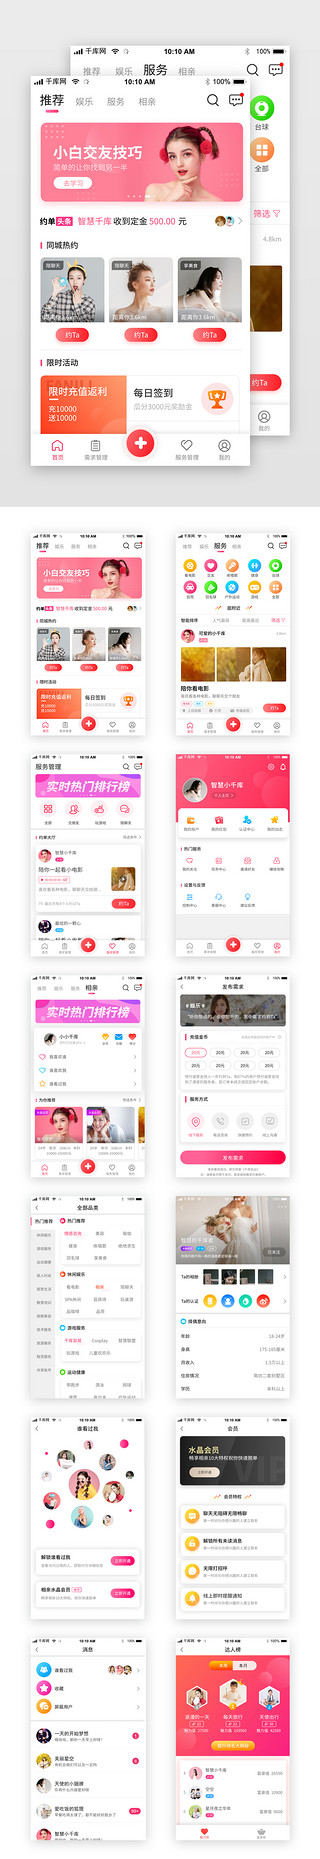 社交启动UI设计素材_粉色交友社交婚恋app套图界面